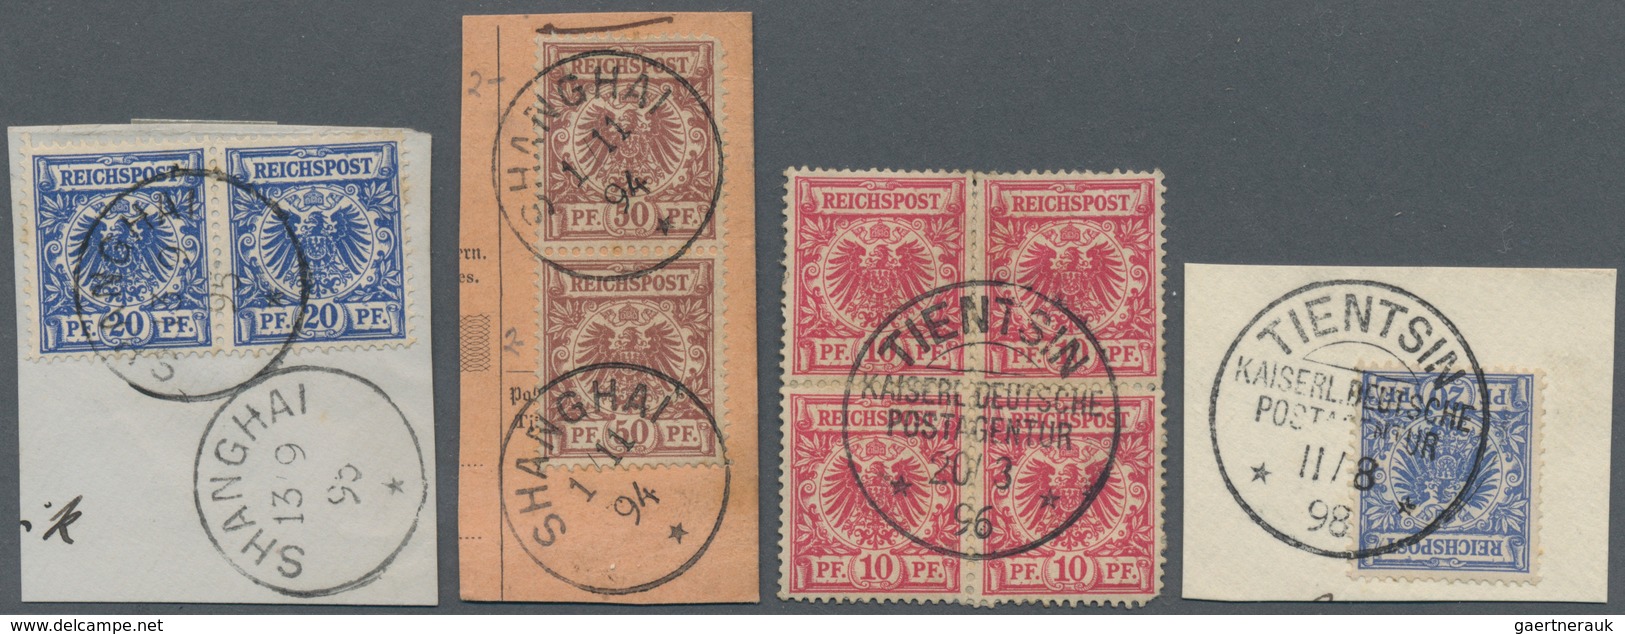 Deutsche Post In China: 1890/1917, Auf Steckkarten Mit Vorläufern, Seepost, Bahnpost, Briefstücke, S - China (offices)